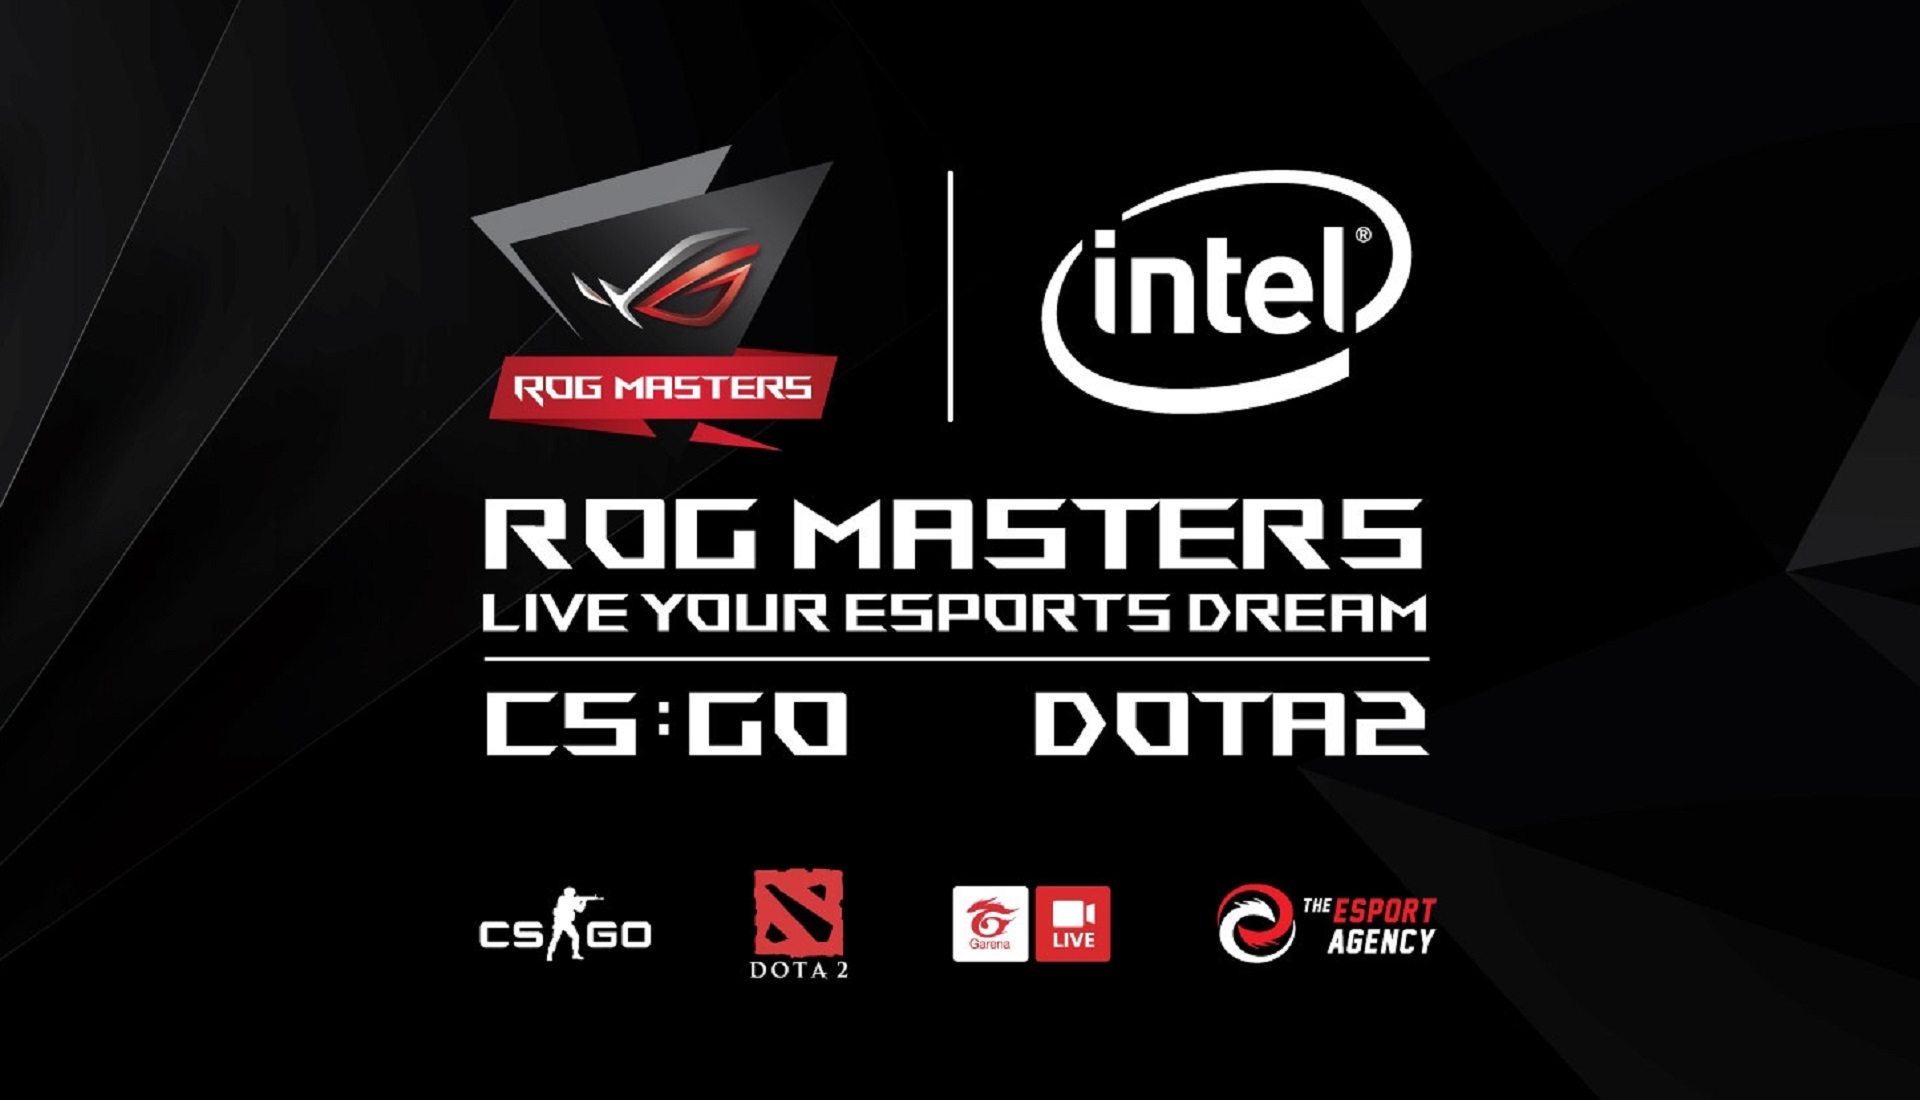 ASUS ROG công bố giải đấu ROG MASTERS 2017 vòng loại Việt Nam cho tựa game DOTA 2 & CS:GO